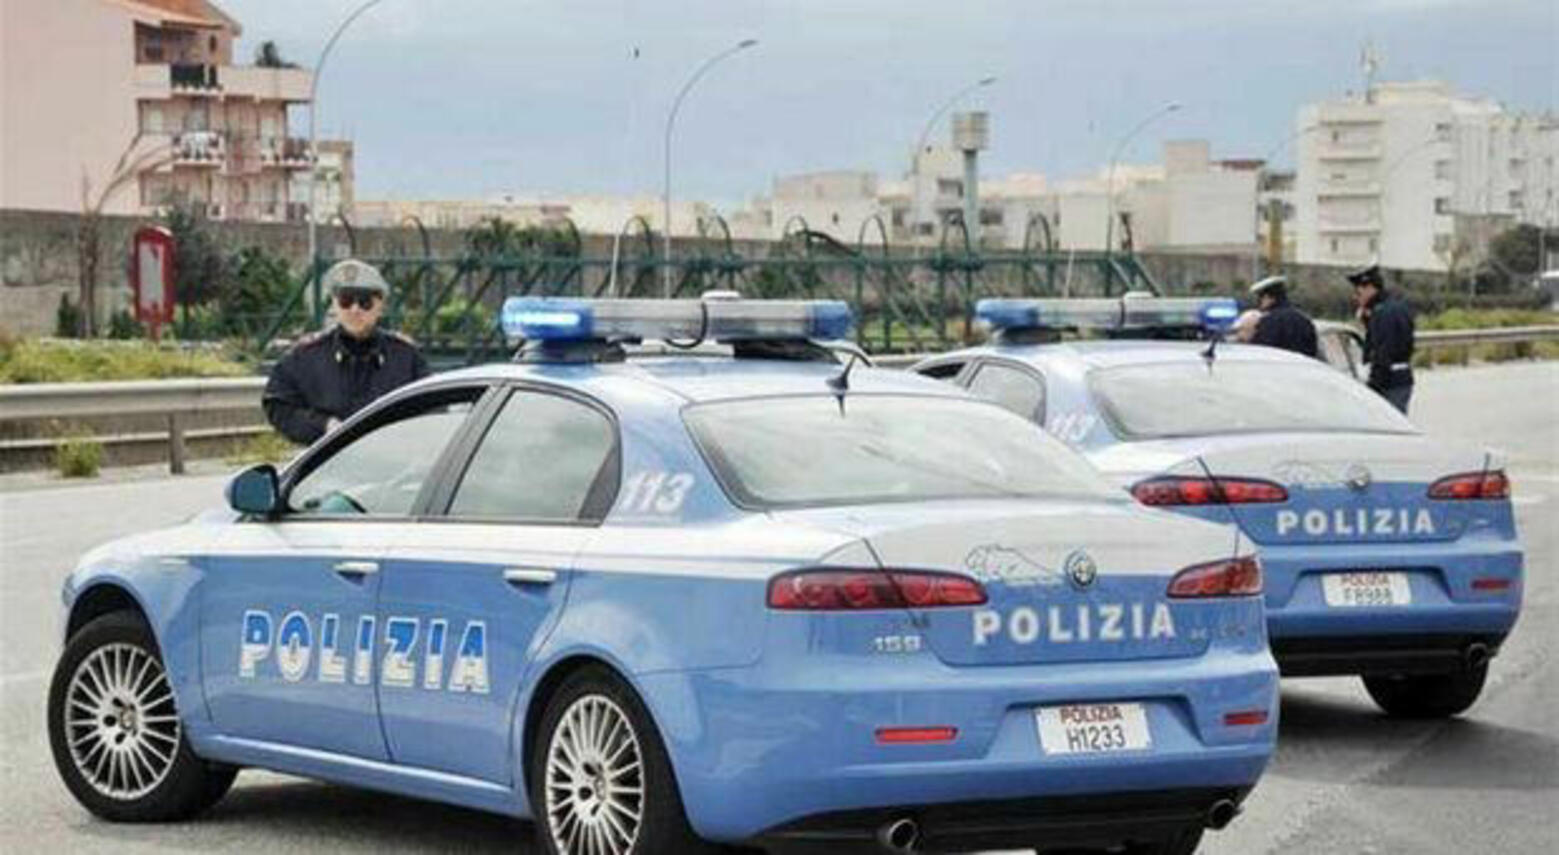 Napoli guida documento falso arrestato latitante